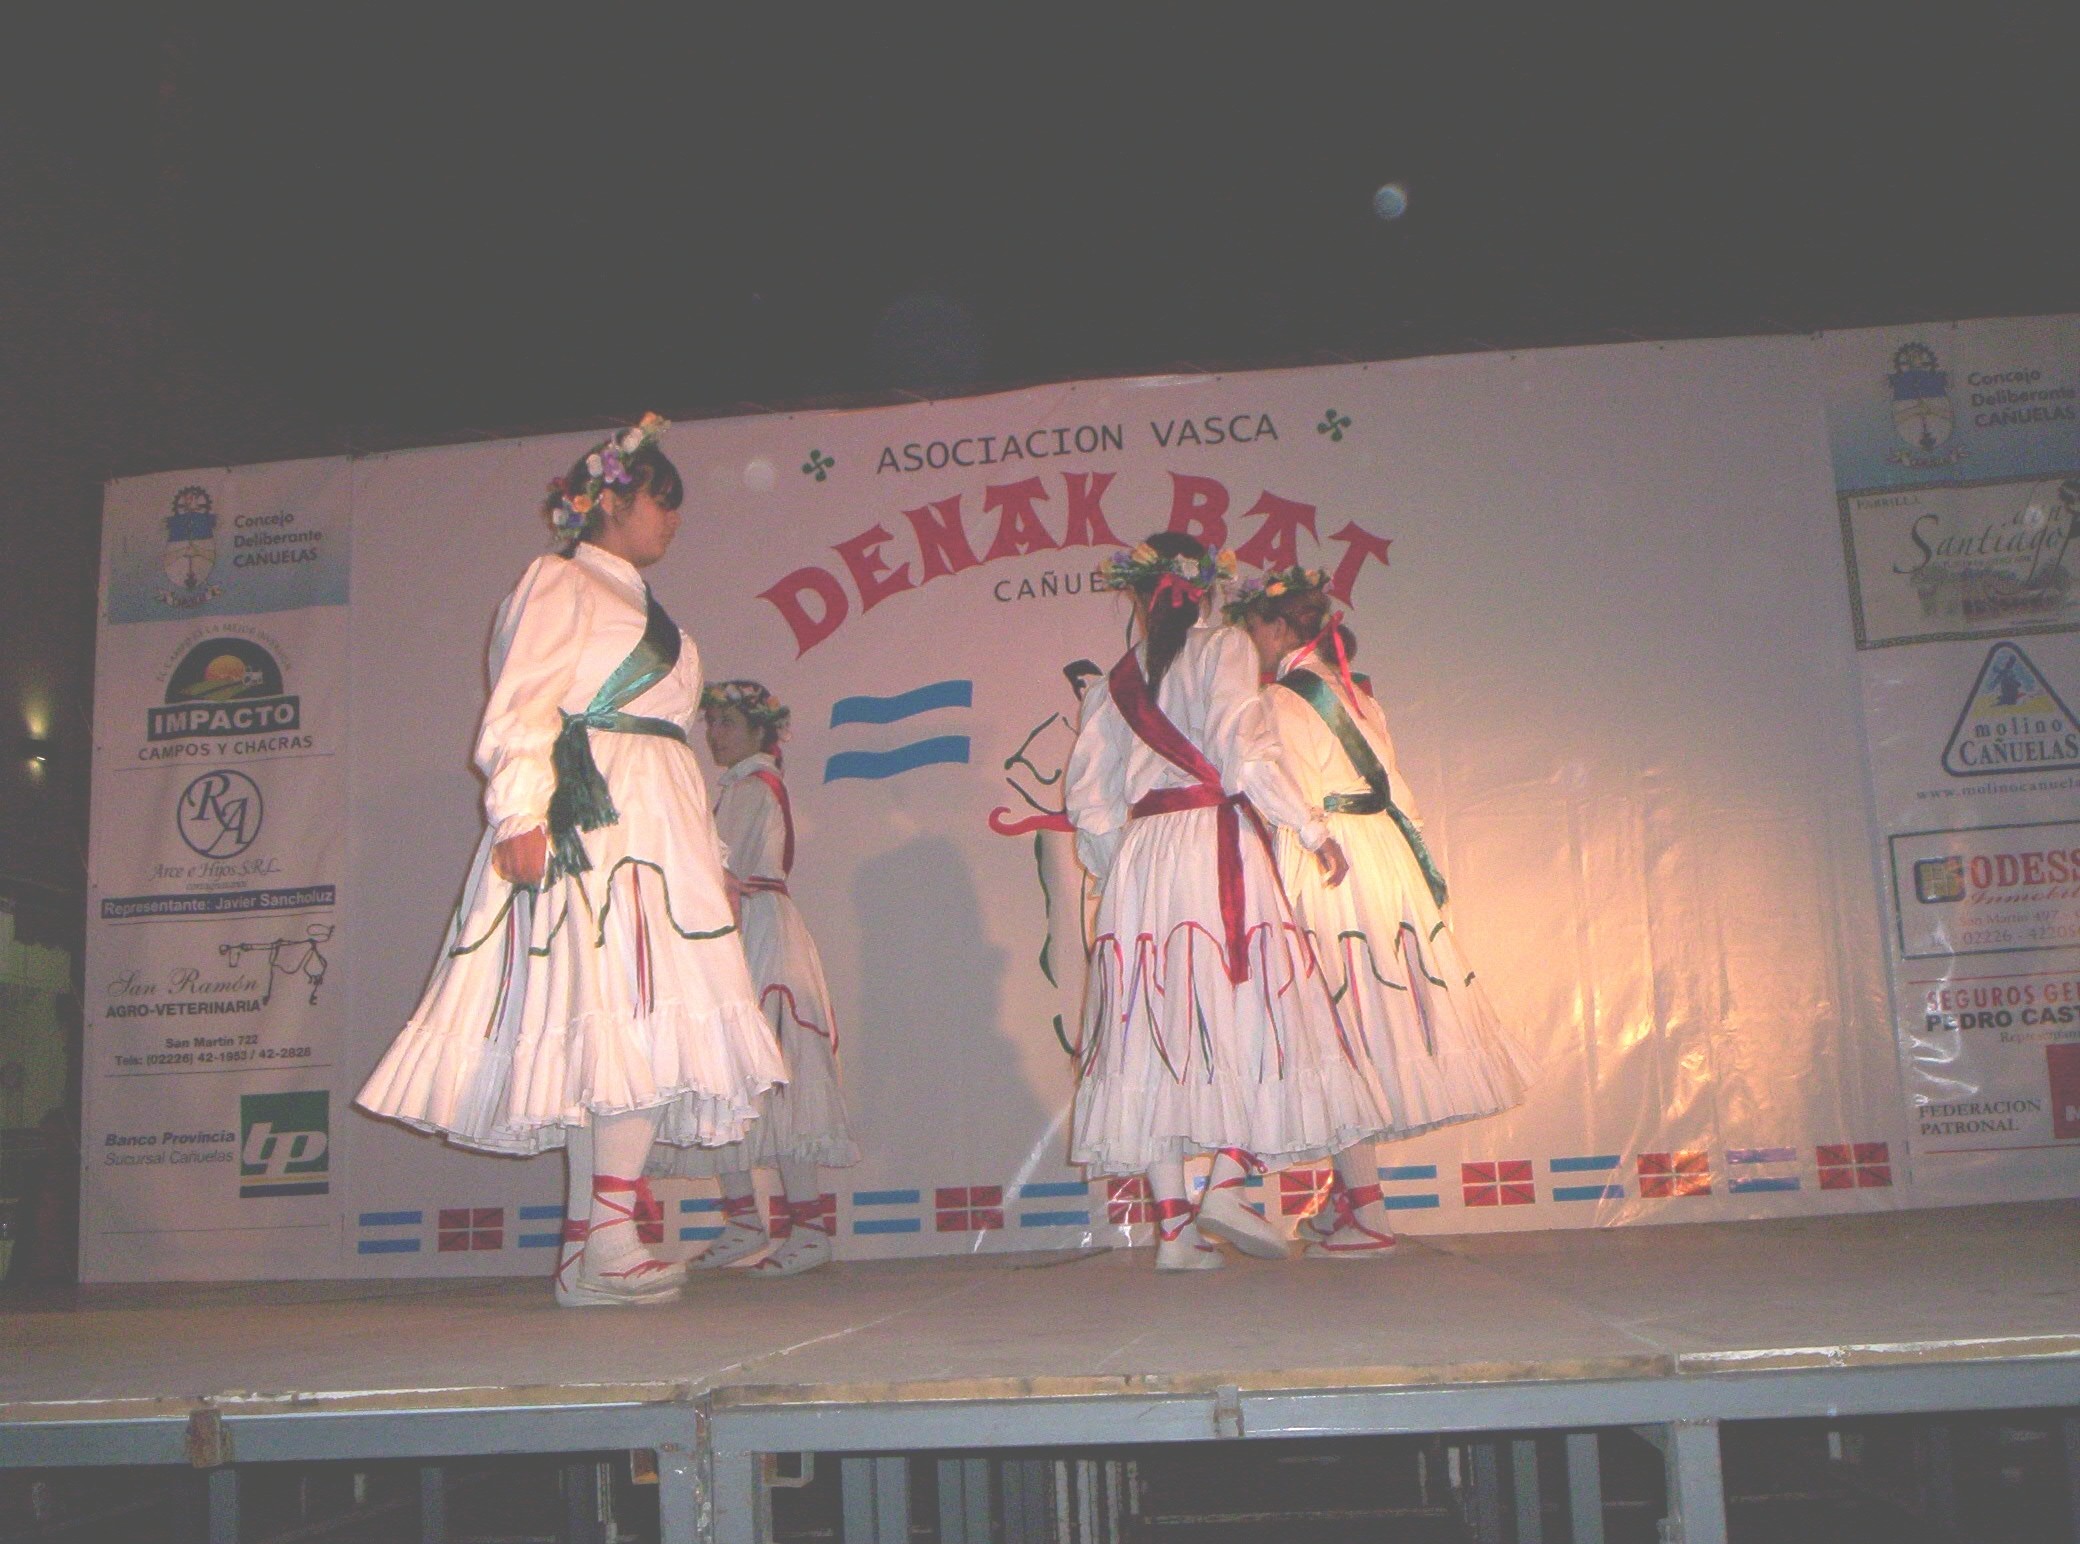 Dantzaris sobre el escenario en una edición anterior del encuentro (foto CañuelasEE)